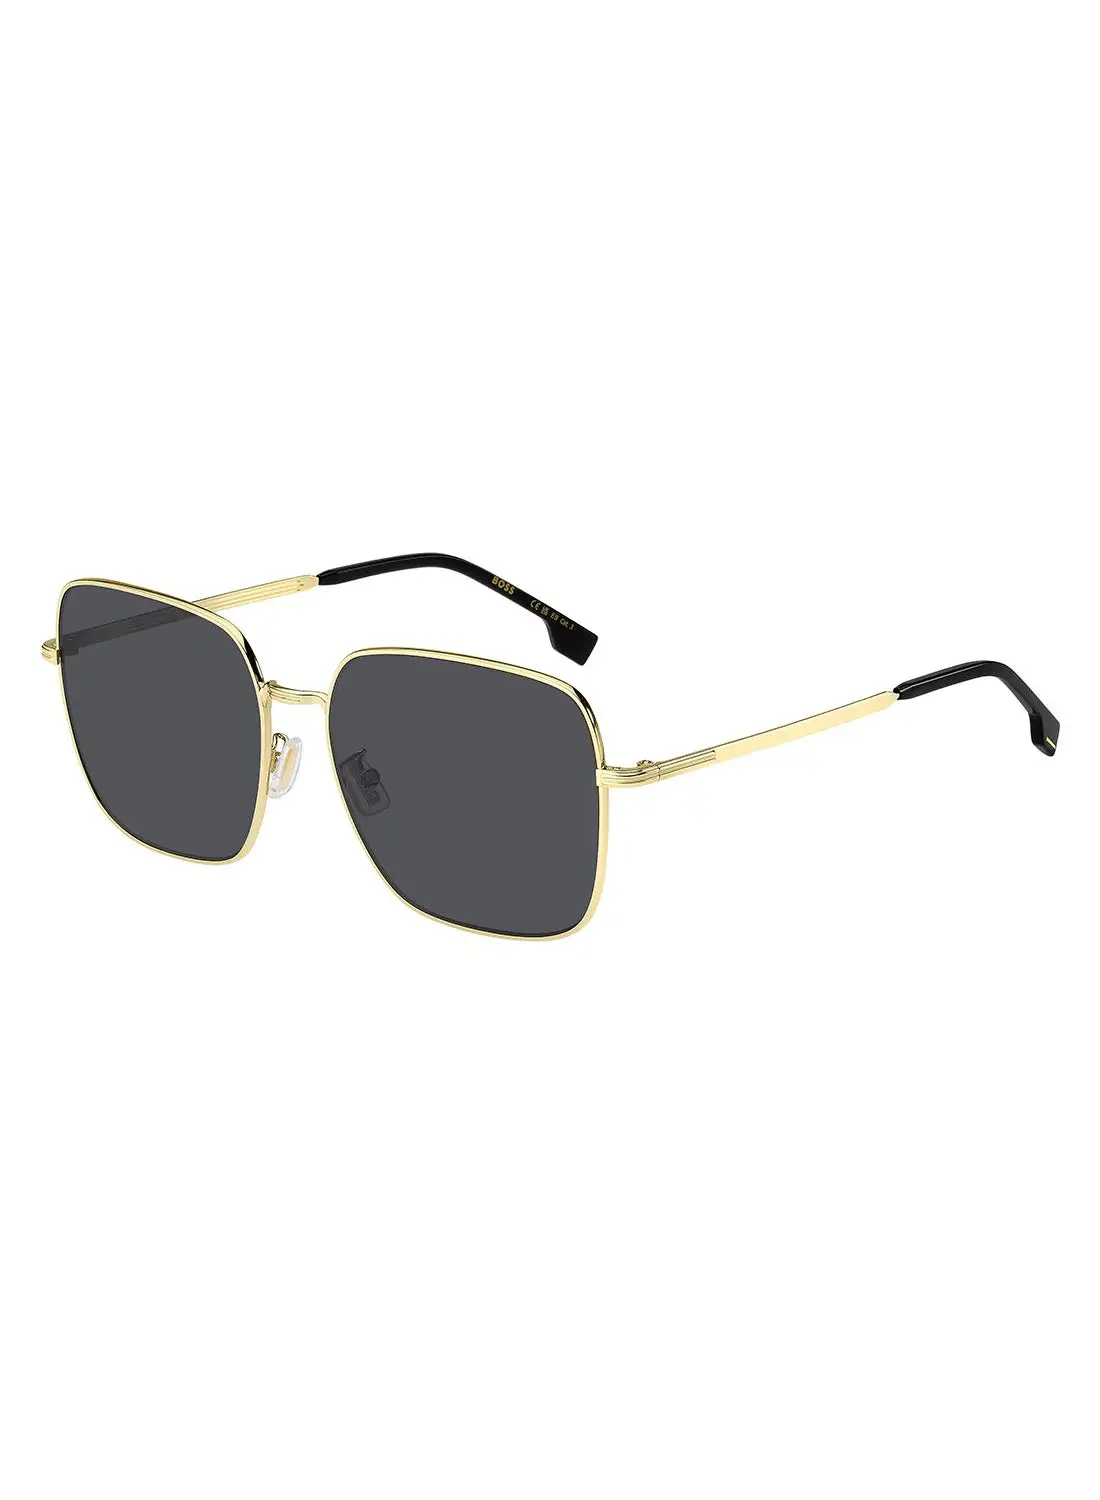 HUGO BOSS Unisex UV Protection Square Sunglasses - Boss 1613/F/Sk Gold Millimeter - Lens Size: 59 Mm